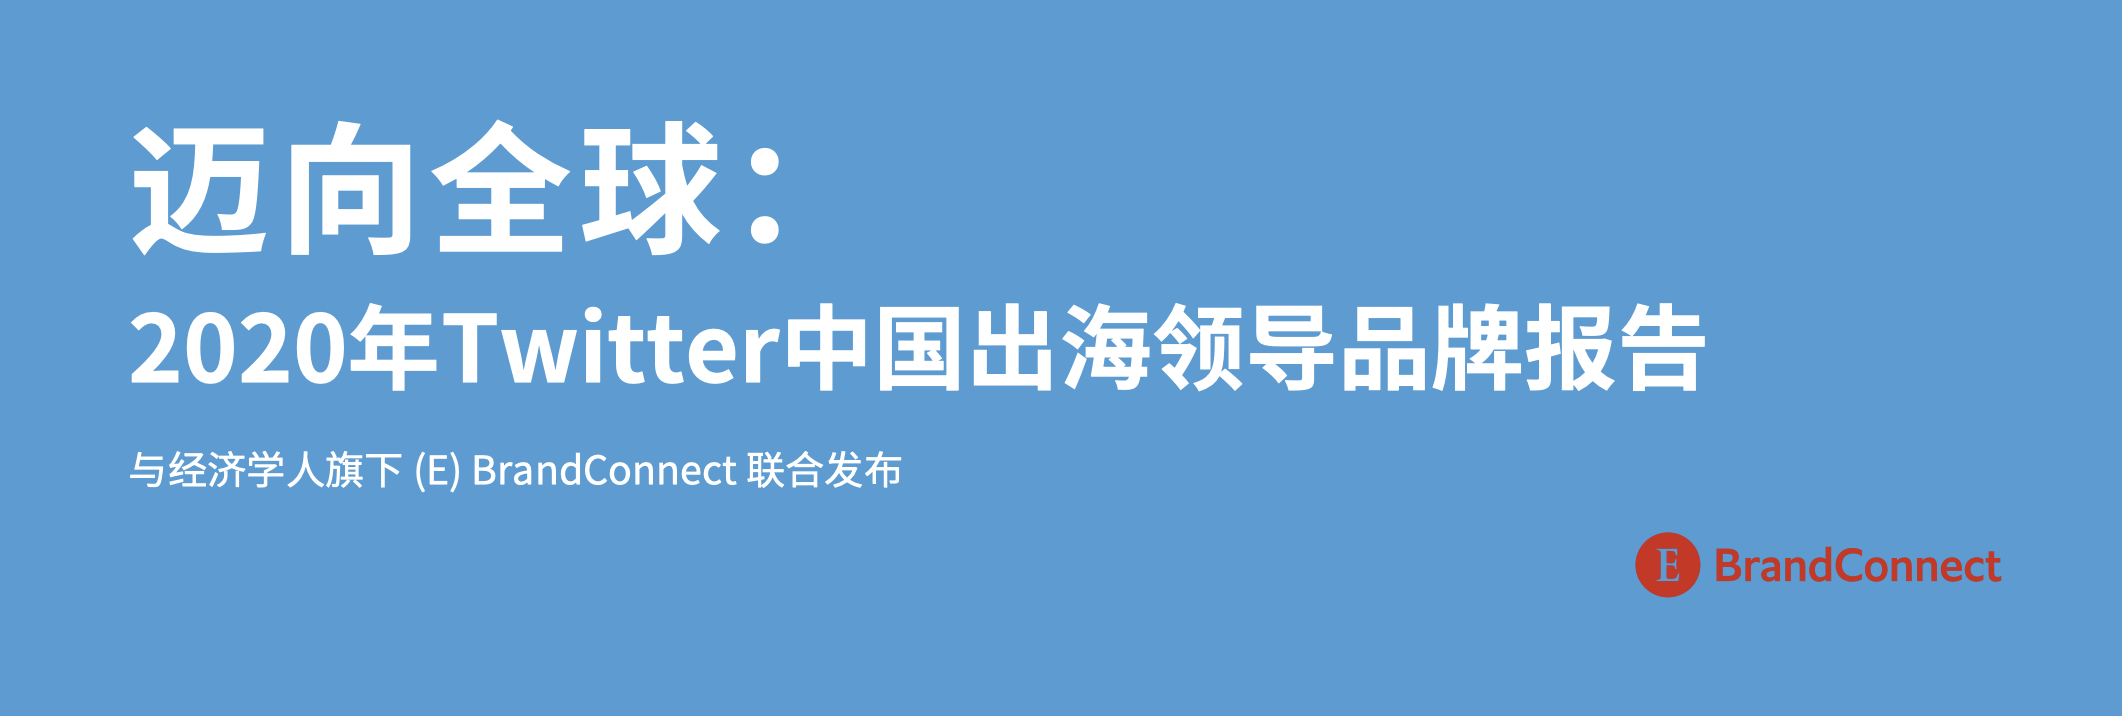 《2020年Twitter中国出海领导品牌报告》